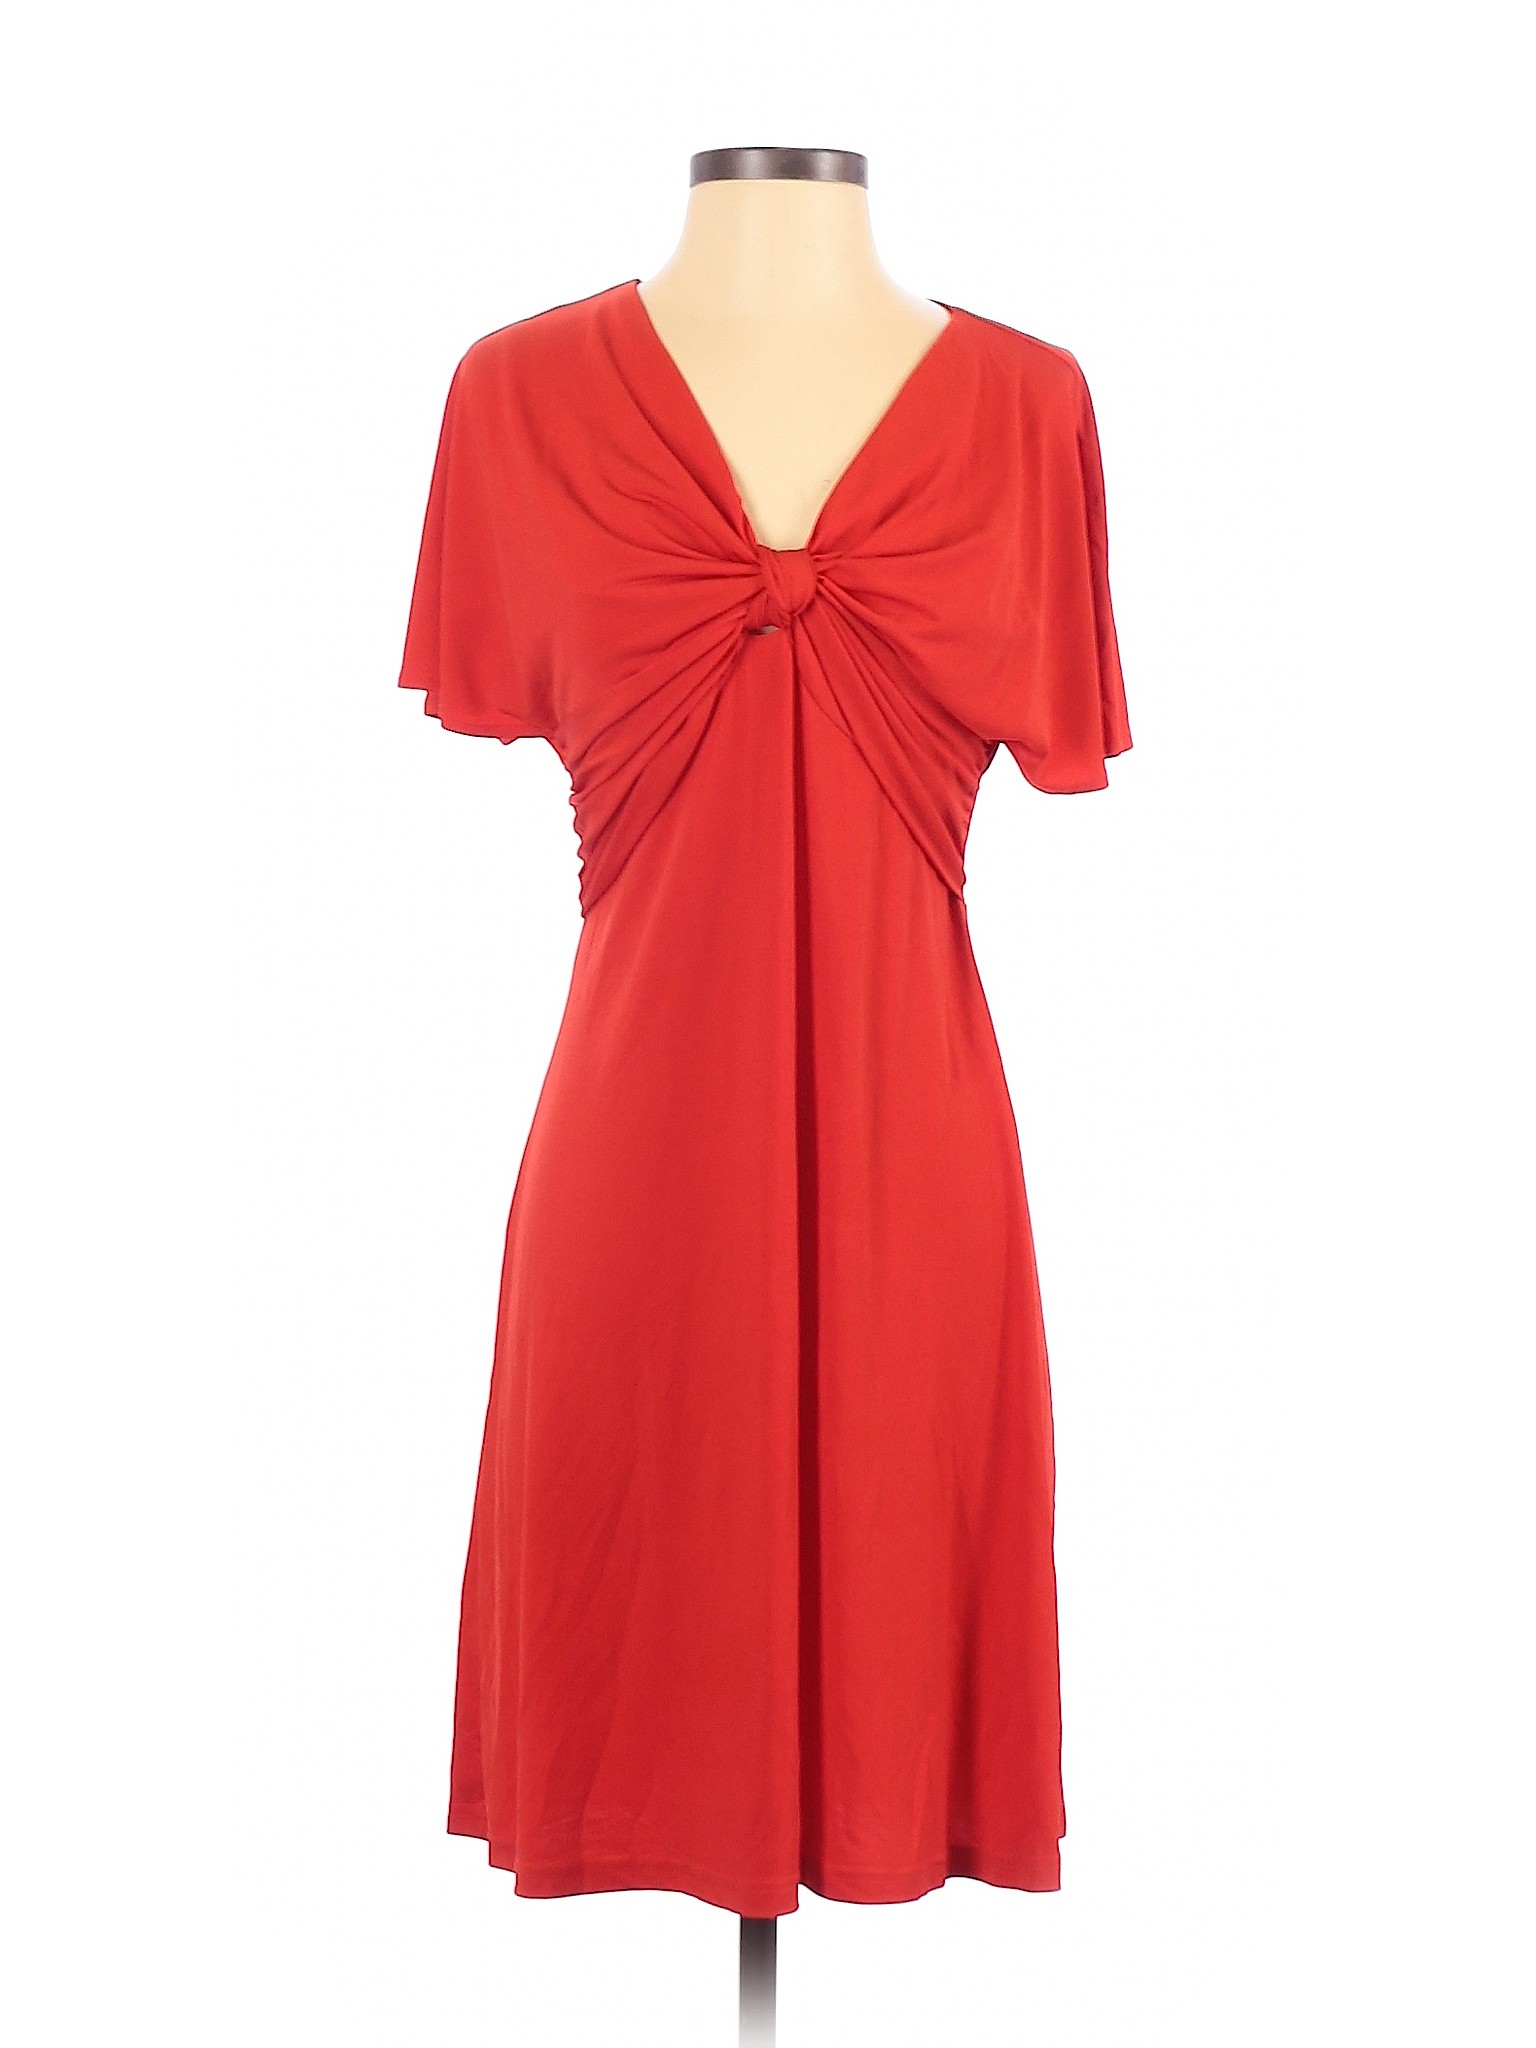 Boston Proper Women Red Casual Dress S | eBay